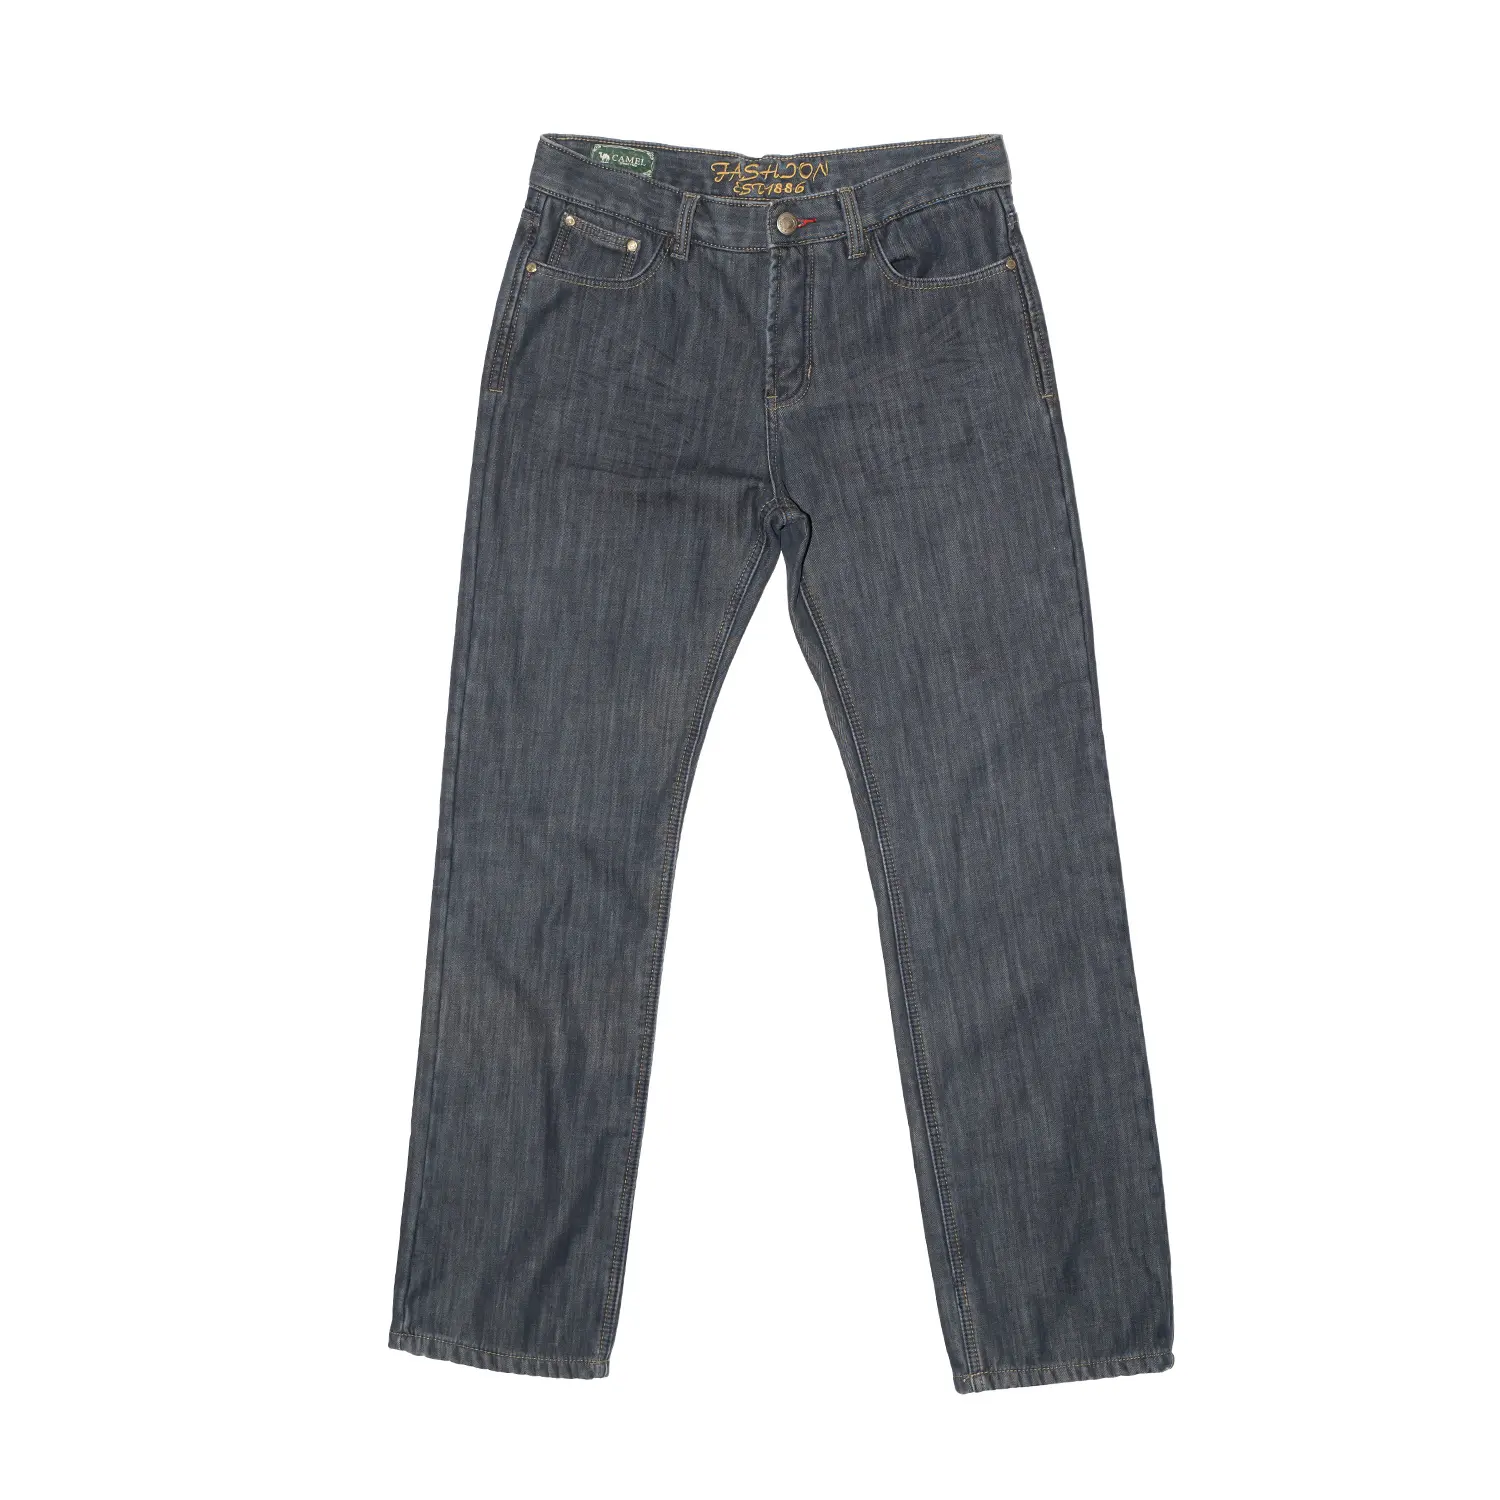 Б/у мужские джинсовые брюки, оптовая продажа, футболки, тюки, Нью-Йорк, Азия, Япония, Индия, BSG, б/у одежда